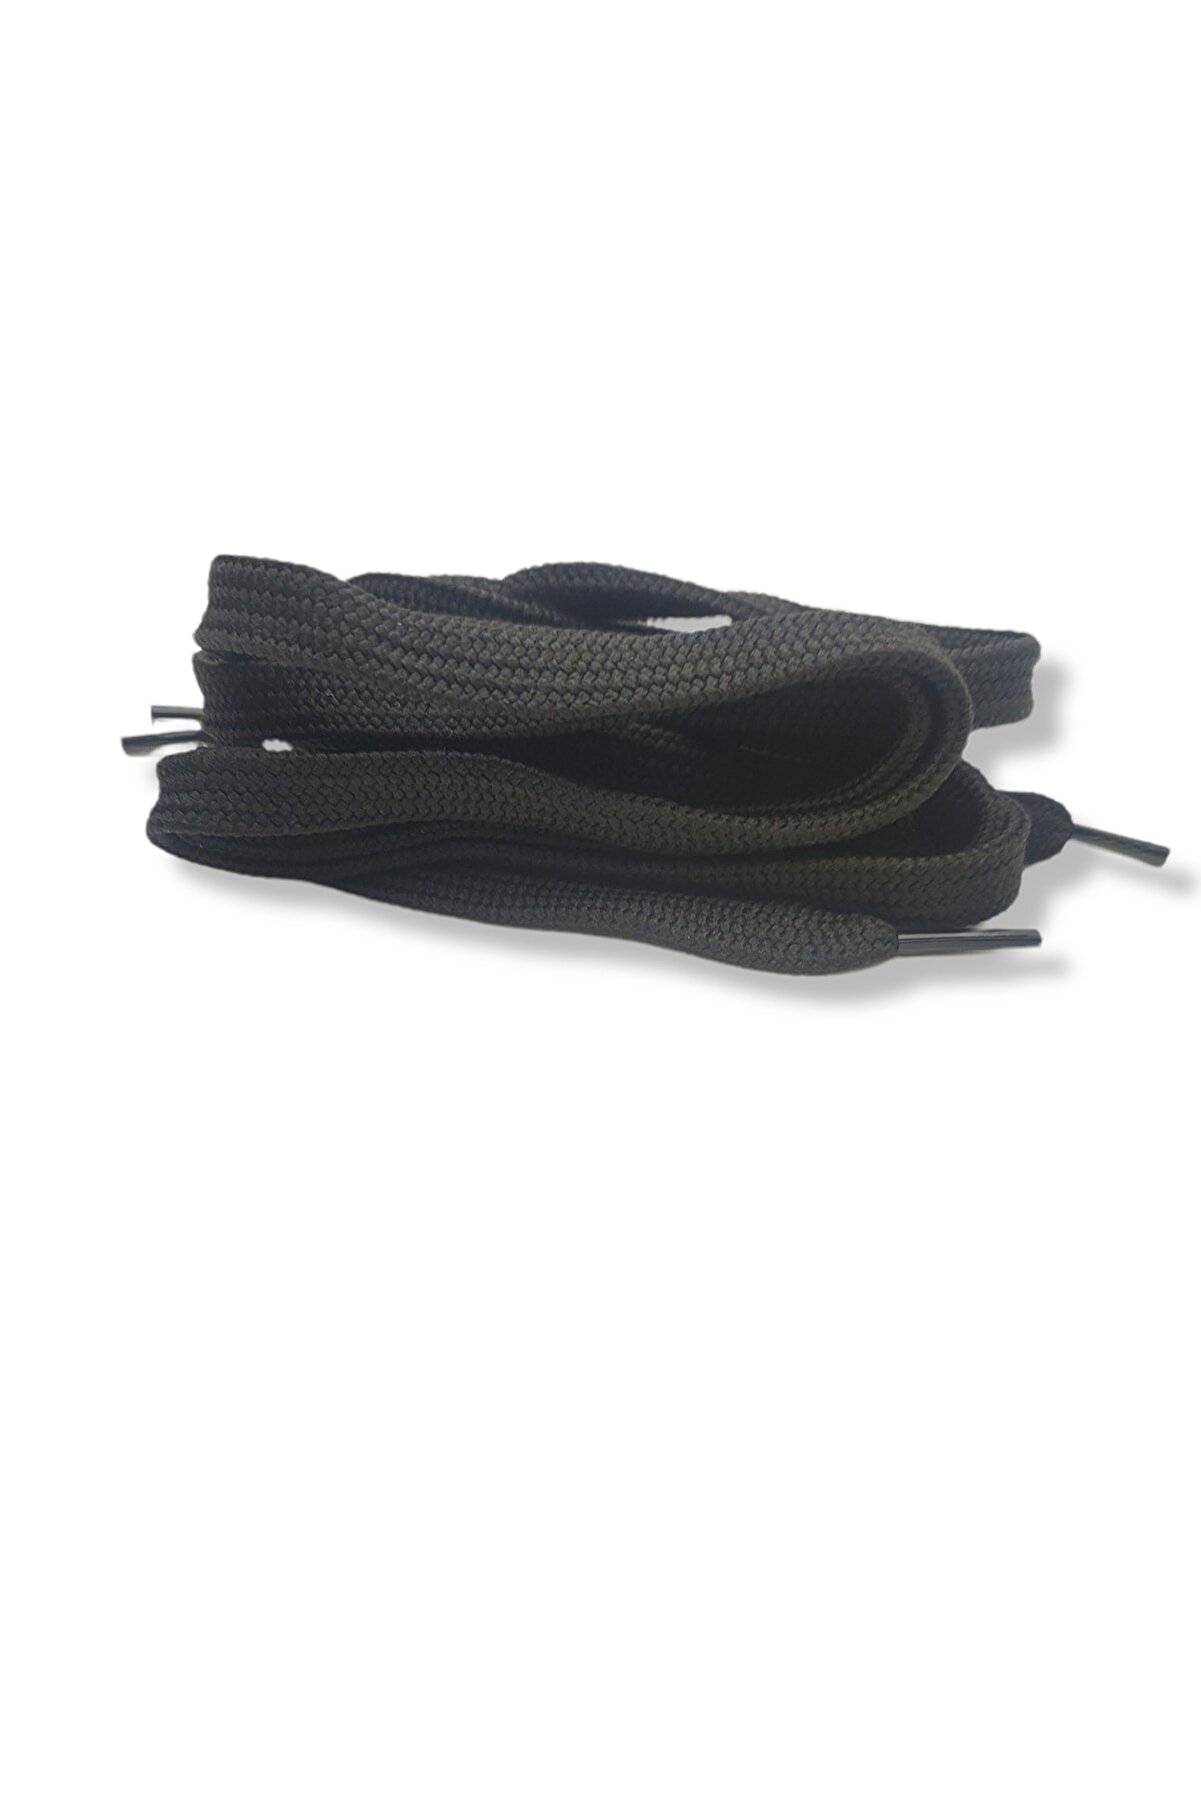 Öztürk Kundura Spor Ayakkabı Bağcığı 120 Cm 1 Çift Siyah